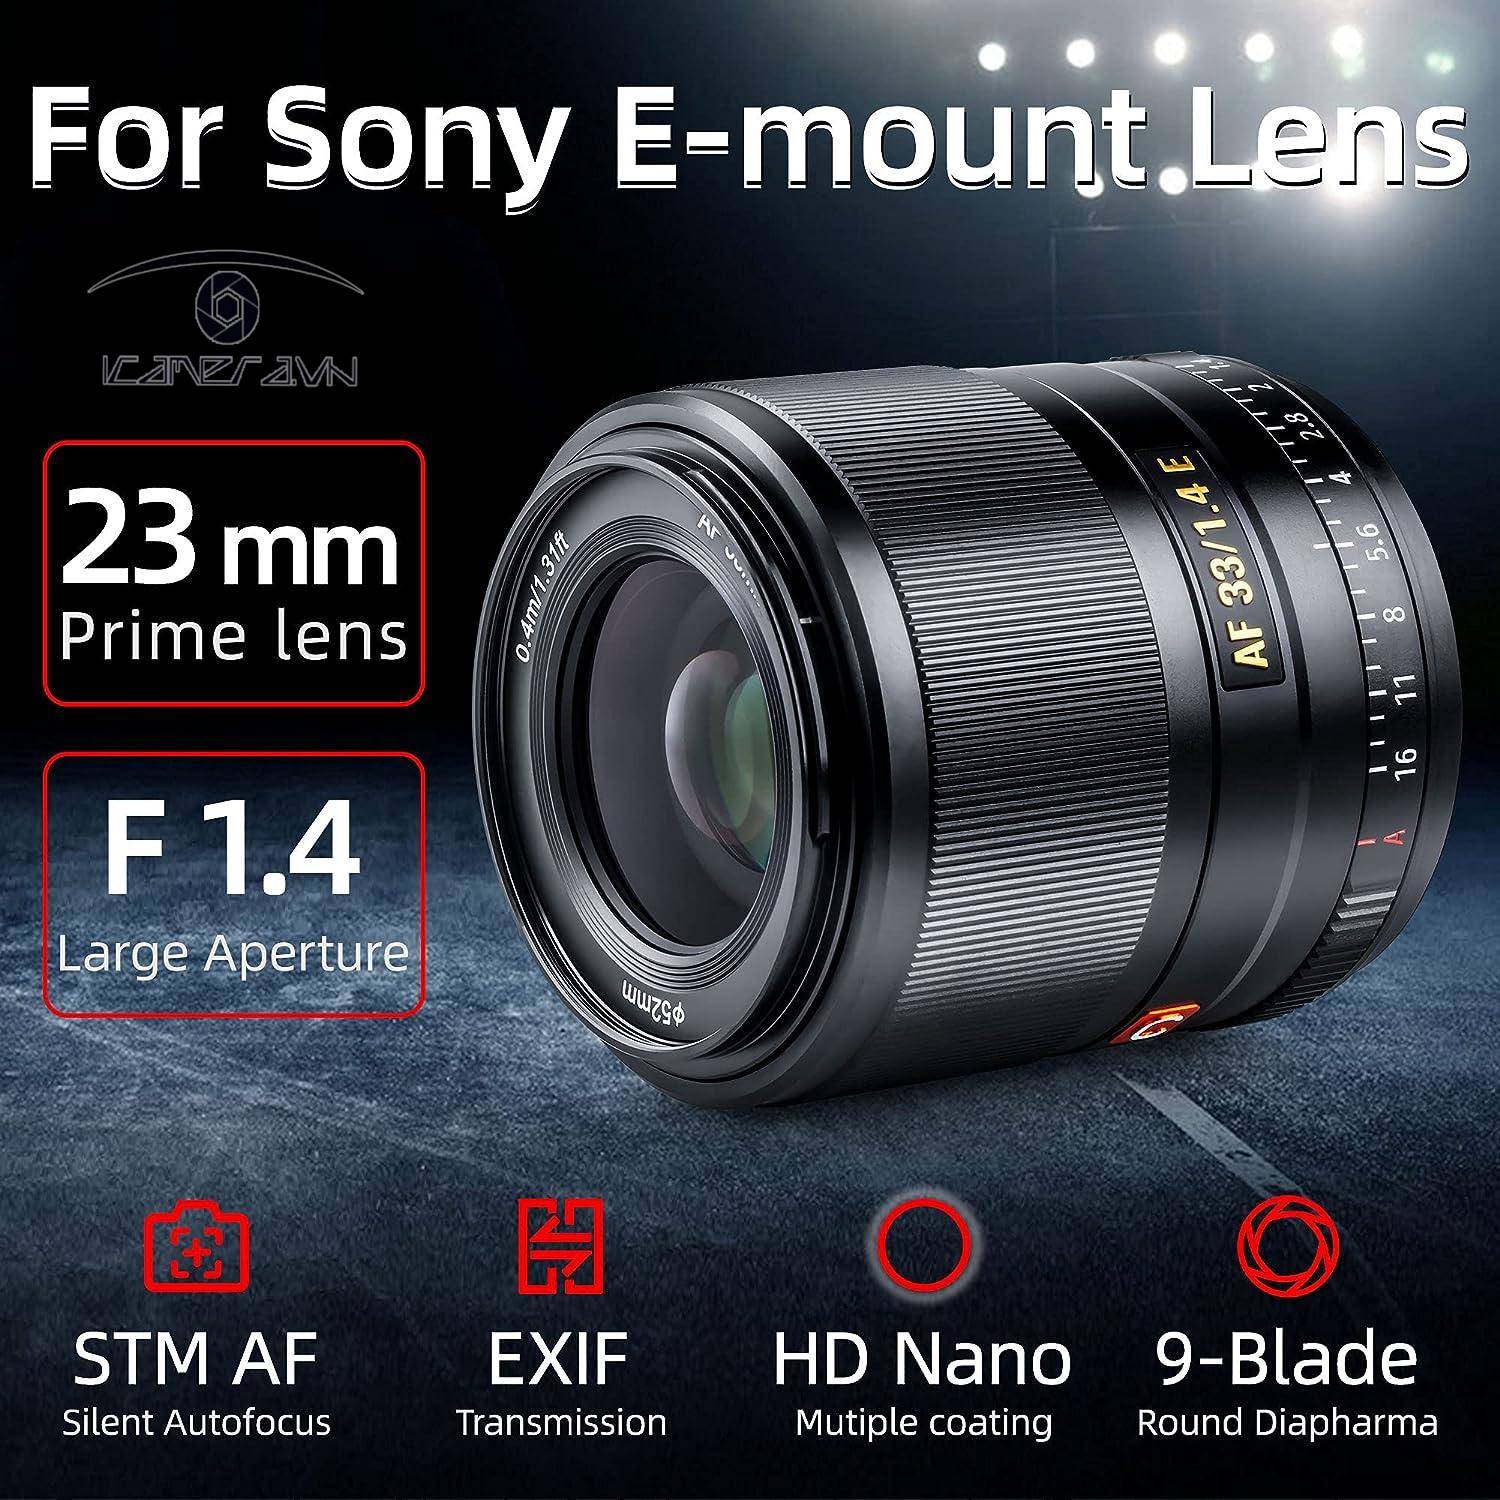 Ống kính Viltrox AF 33mm f / 1.4 for Sony E (Chính Hãng)